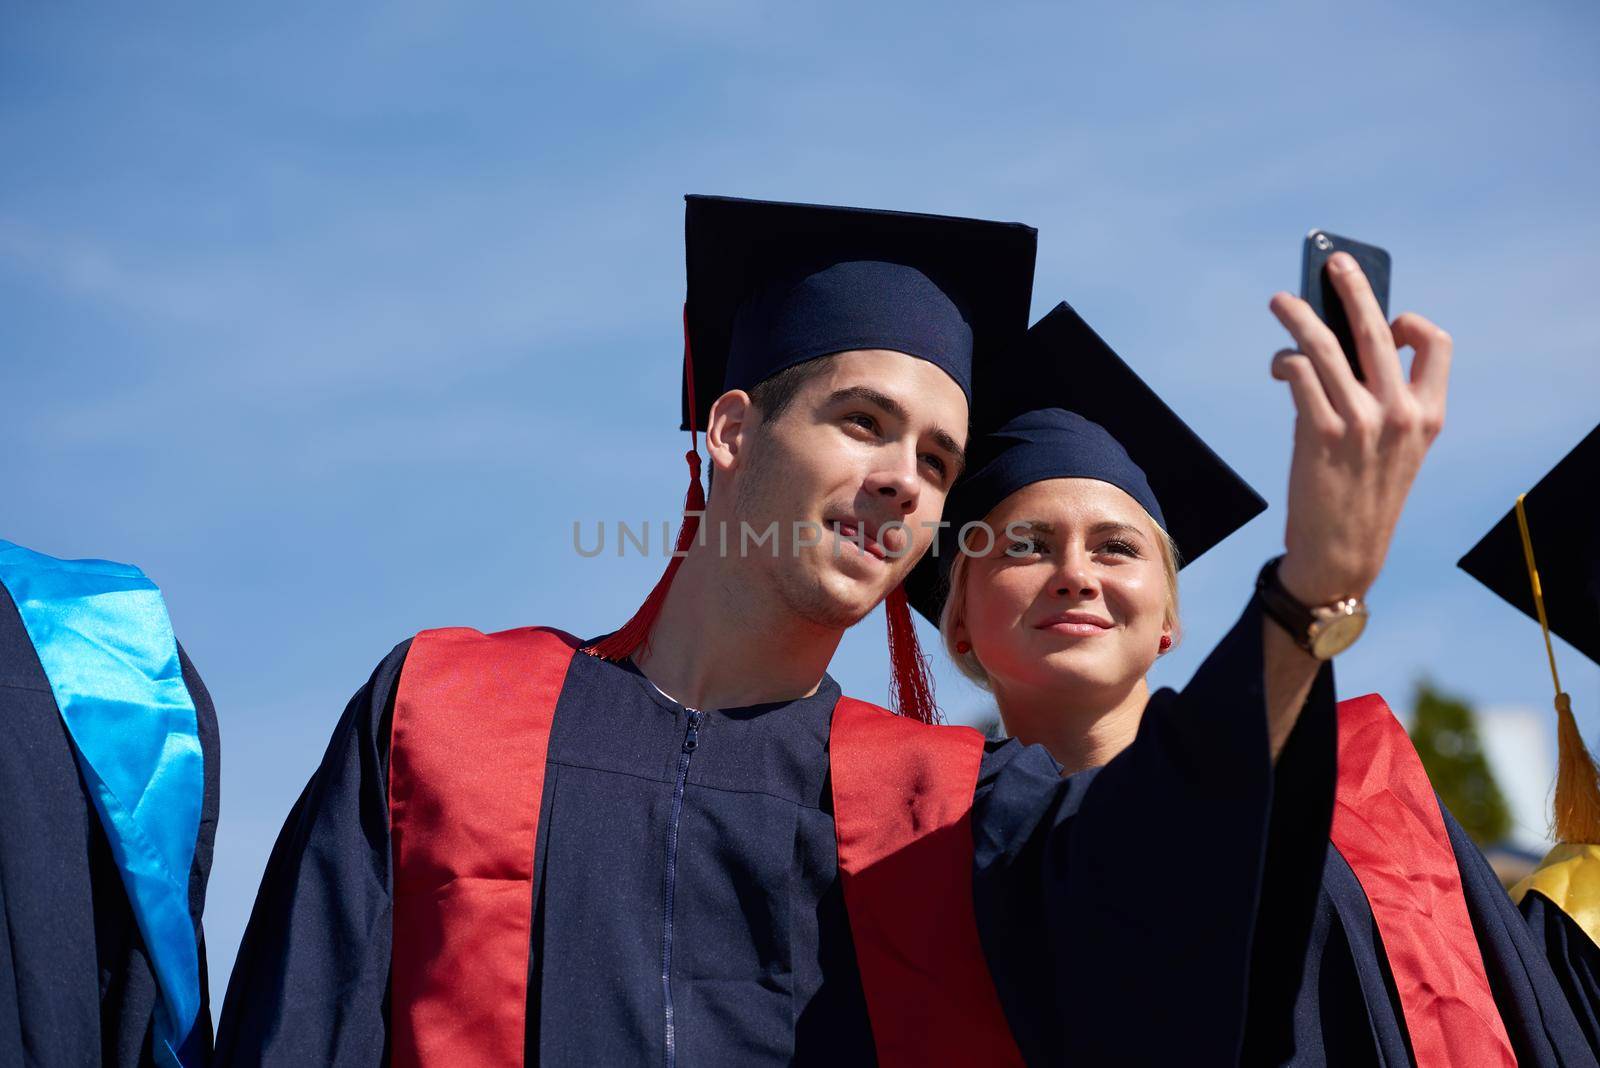 students group in graduates making selfie by dotshock